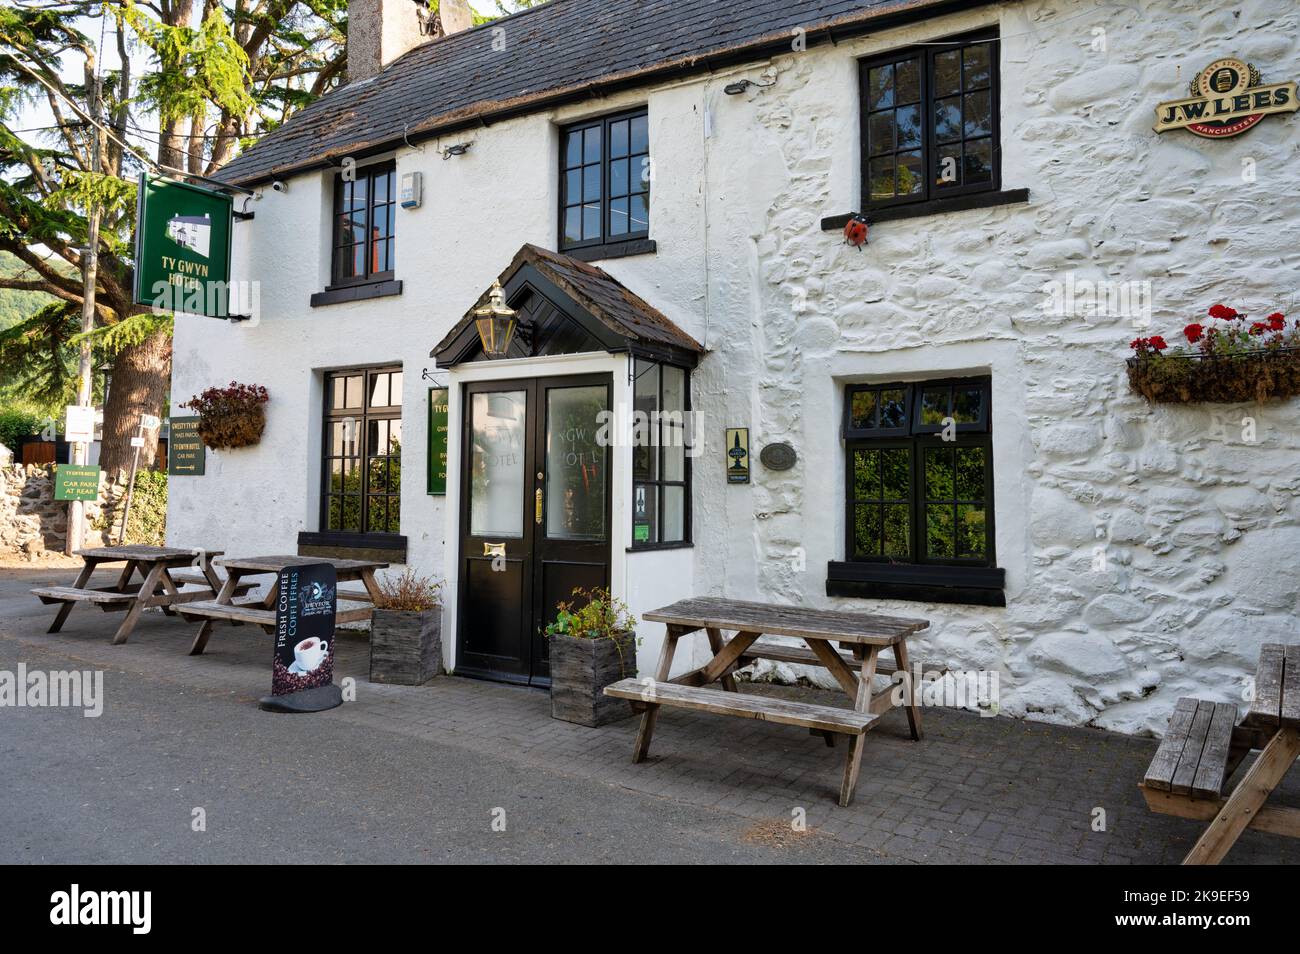 ROWEN, UK - 16. Juli 2022: Das Ty Gwyn Hotel und Bar im Dorf ROWEN in Nordwales. Stockfoto